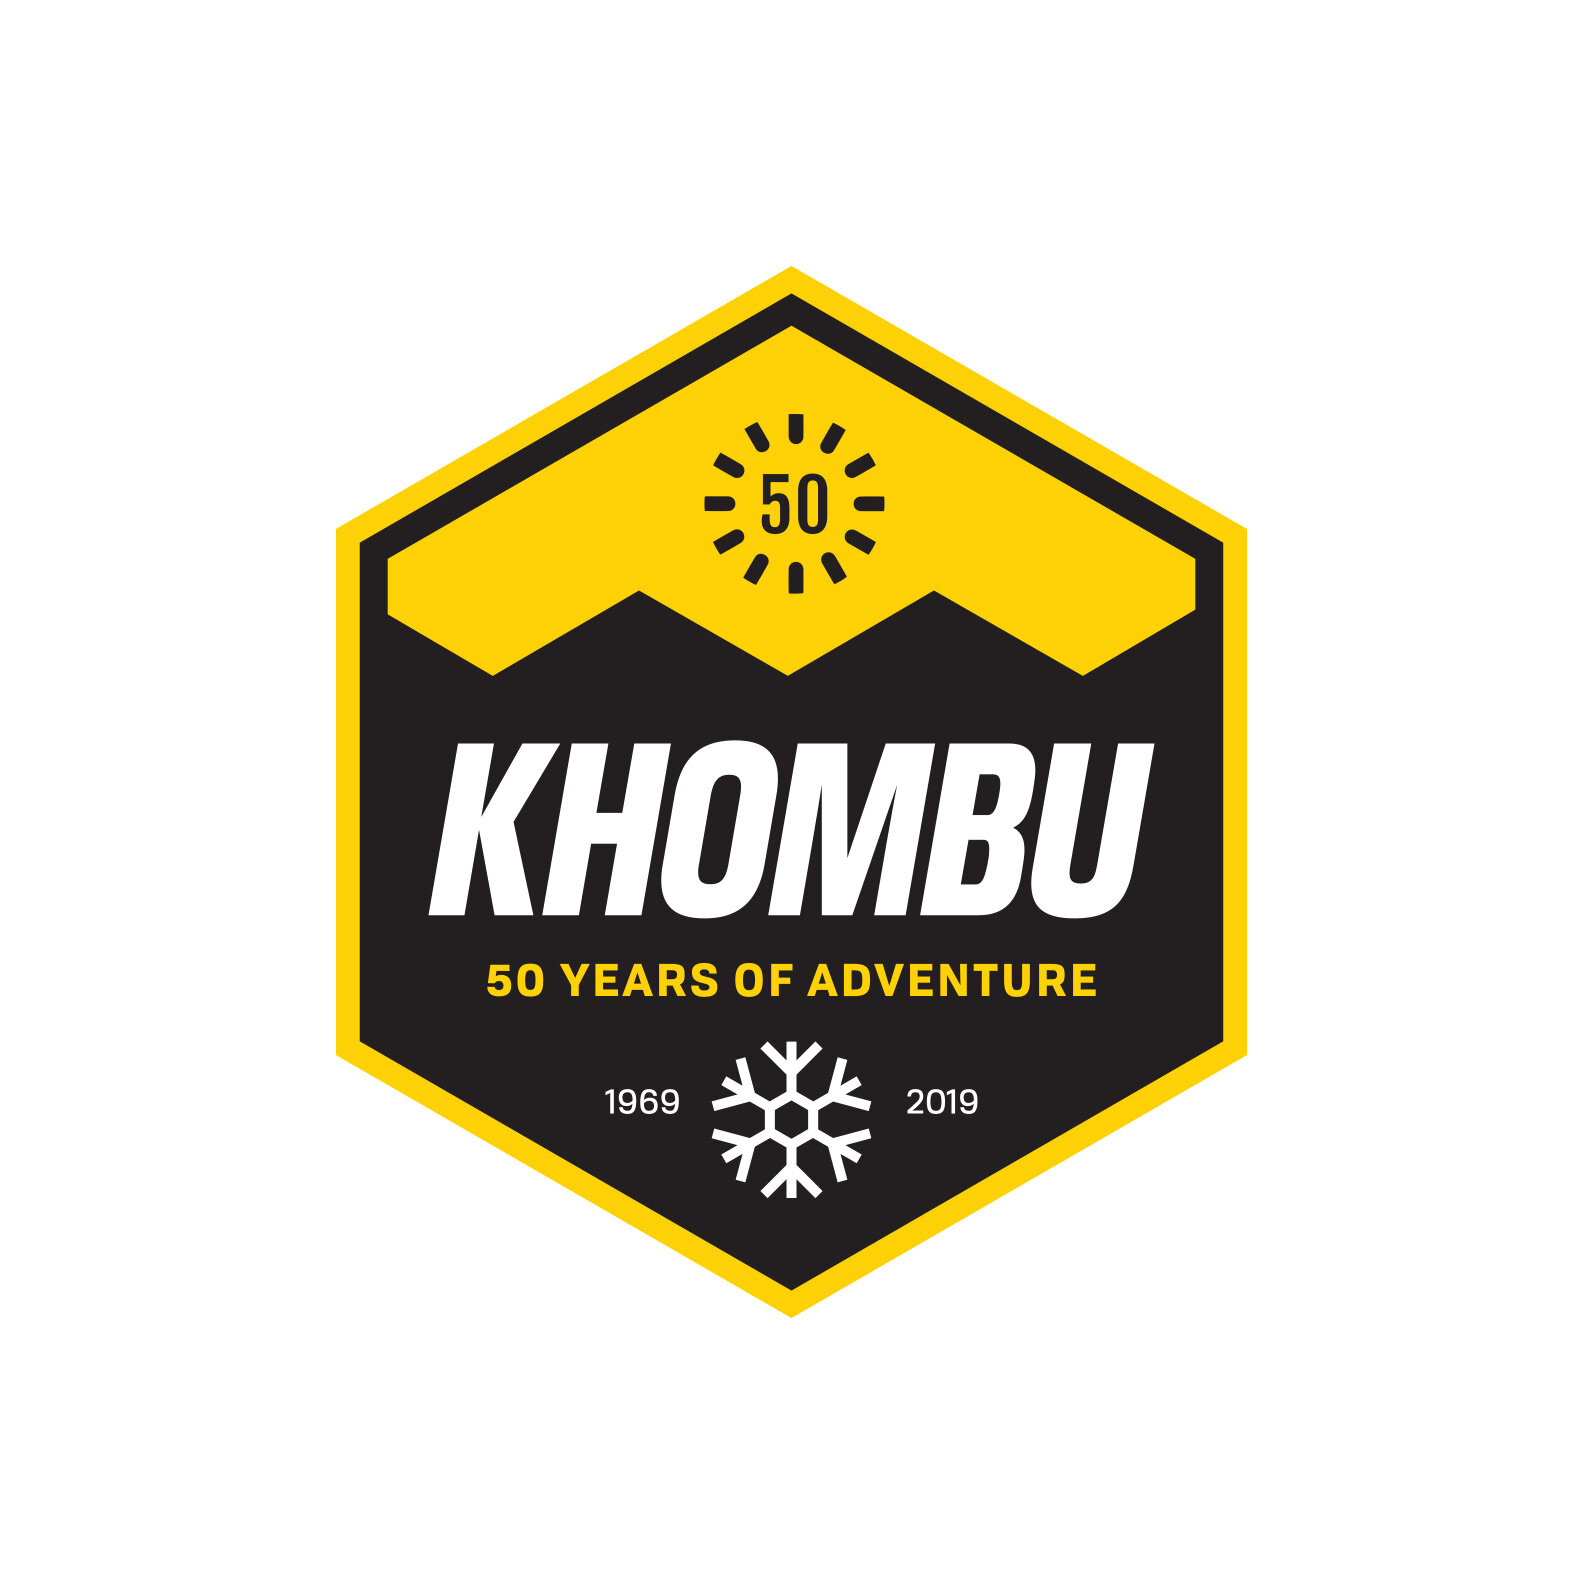 Khombu